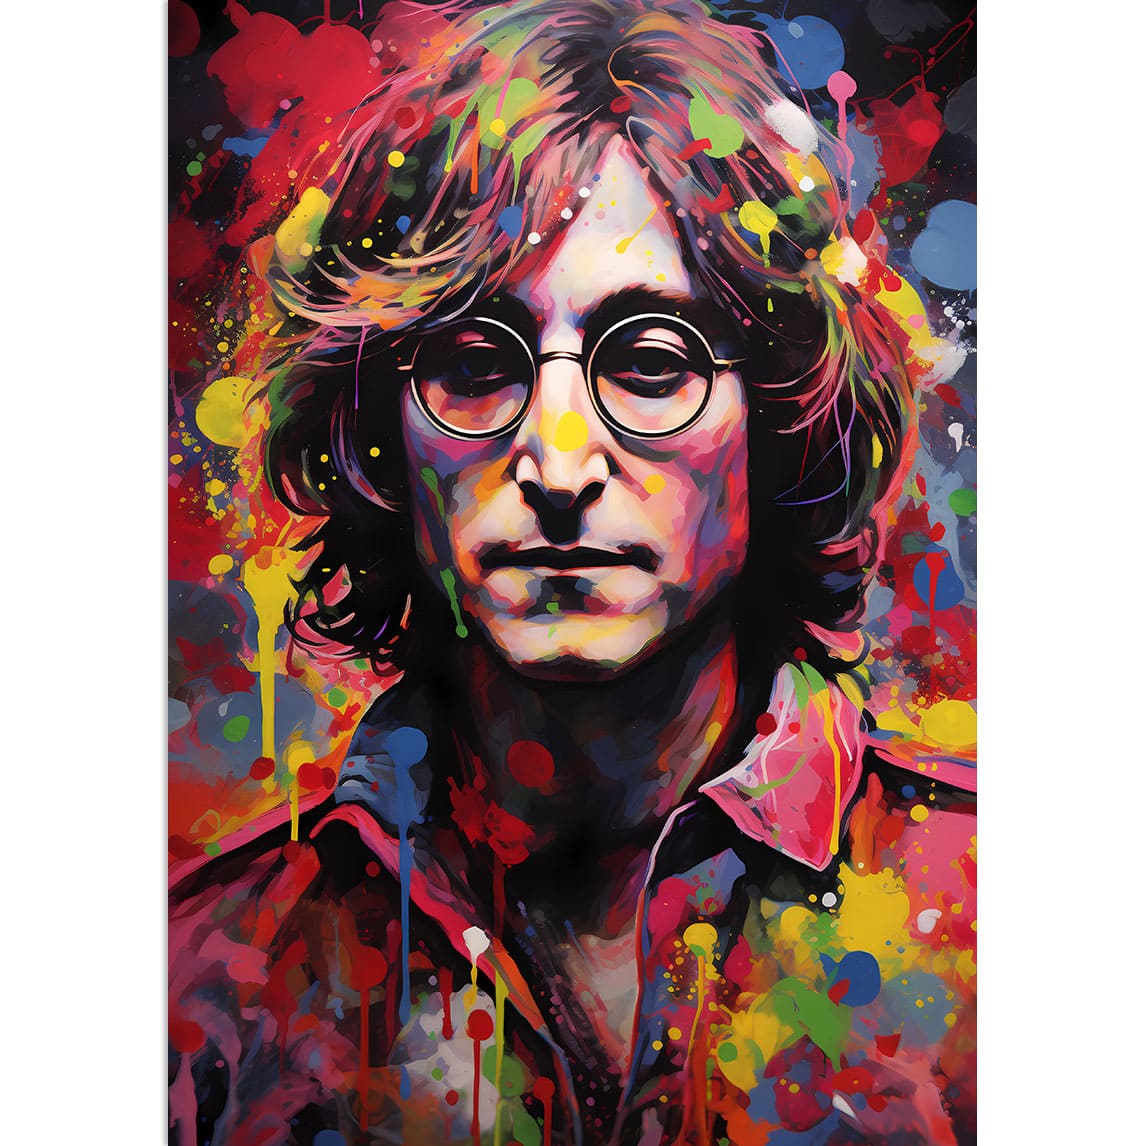 John Lennon, gemalt mit Wasserfarben und einem großen Spektrum von Farben